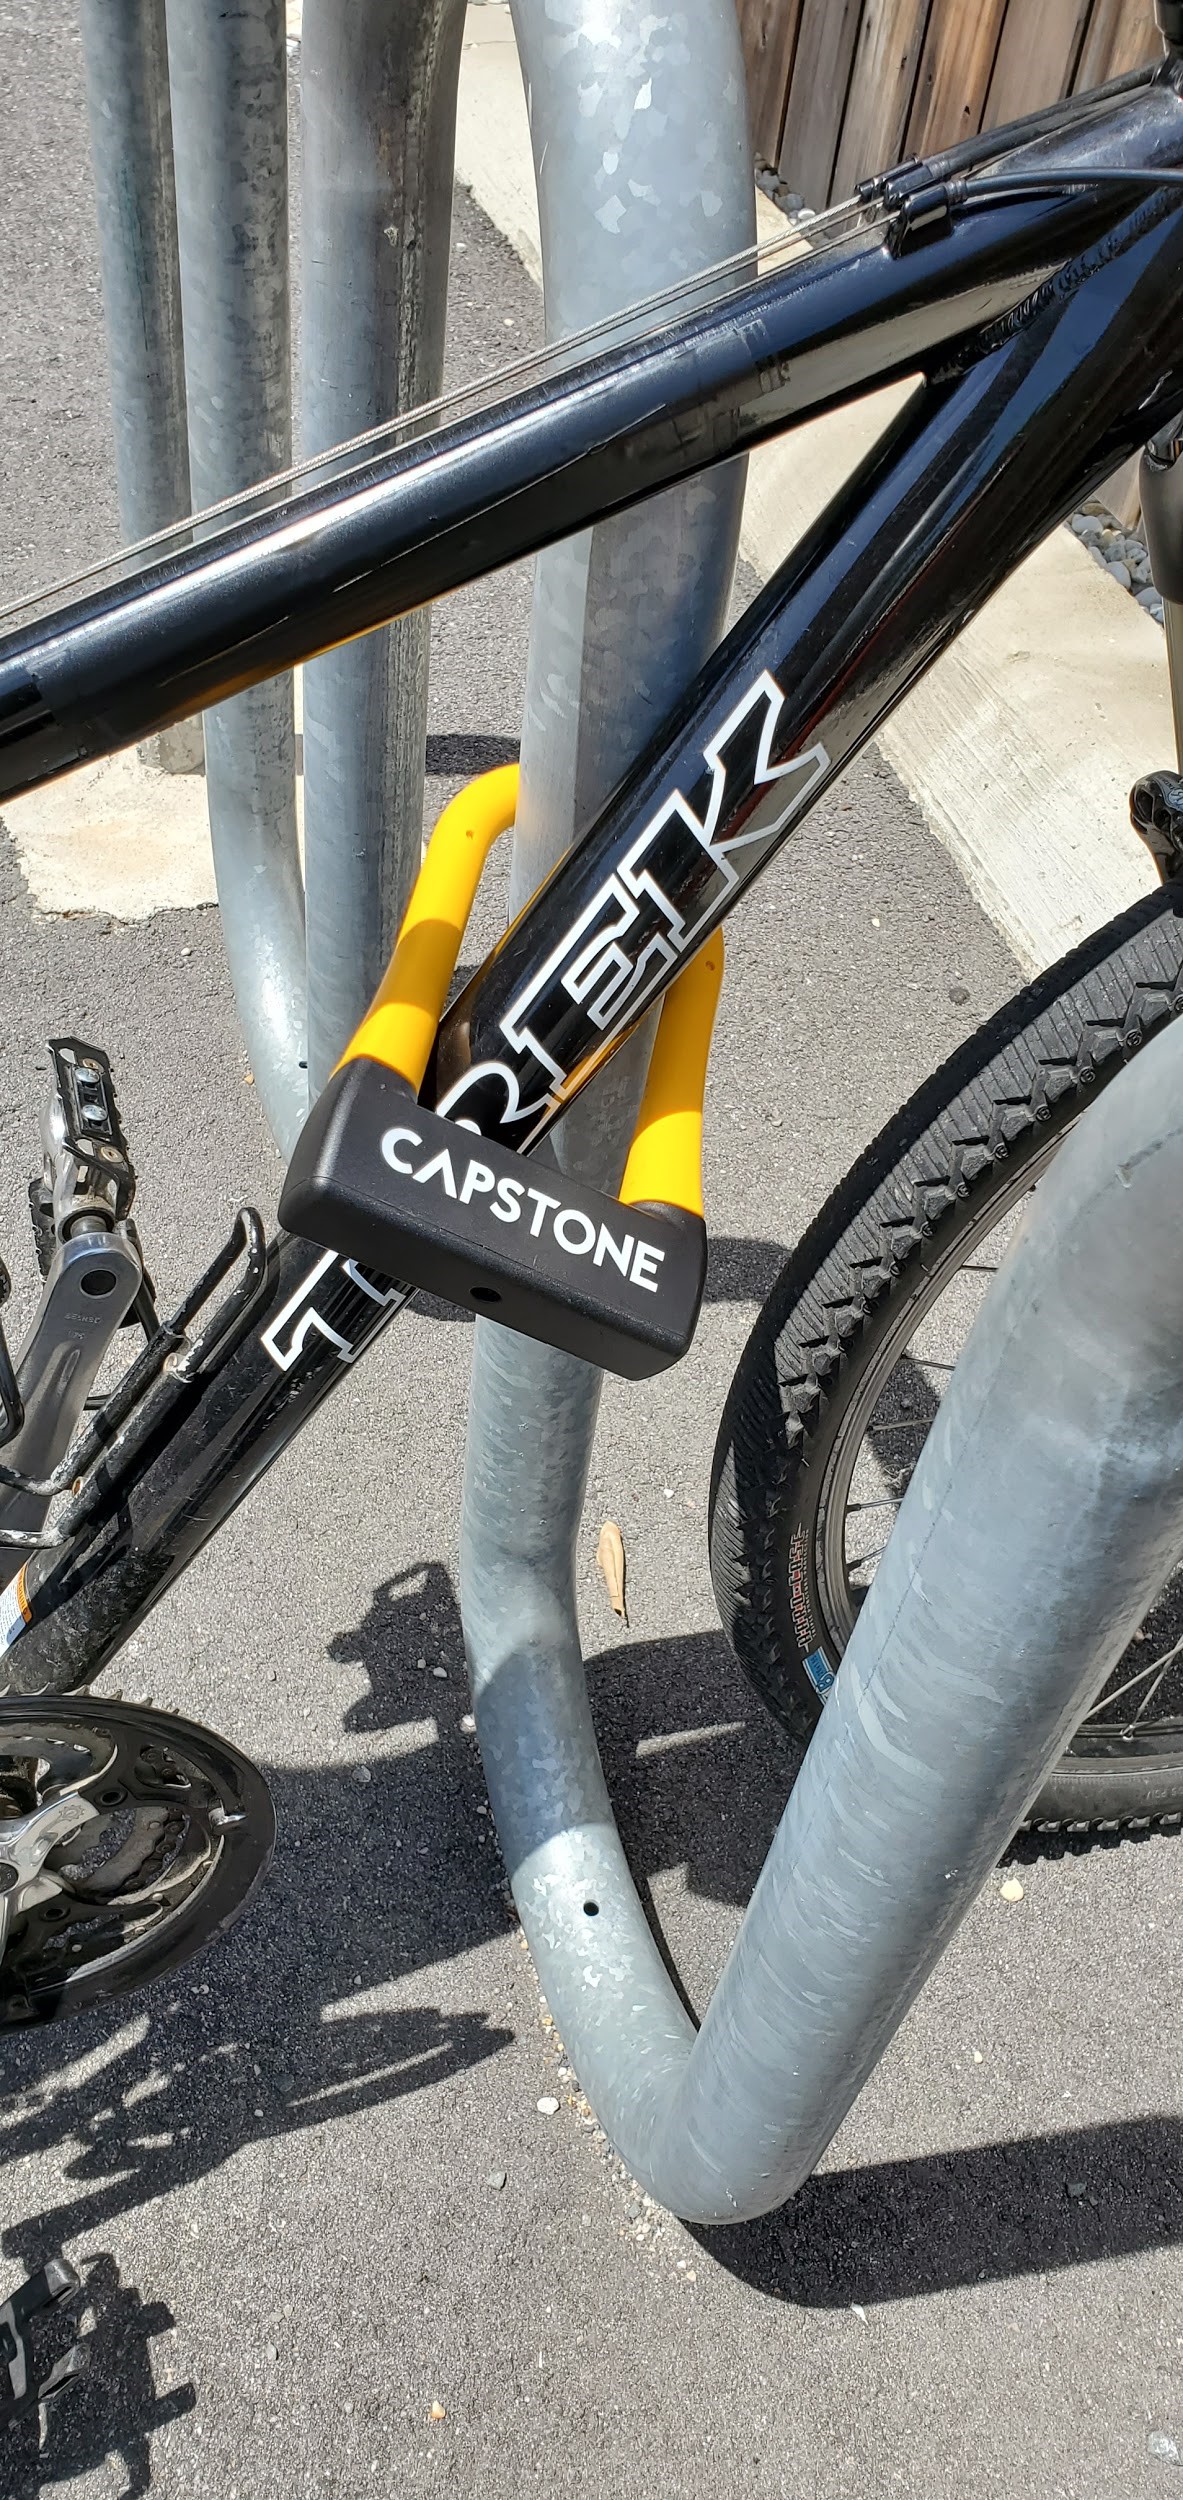 A U-lock correctly securing a bike frame.